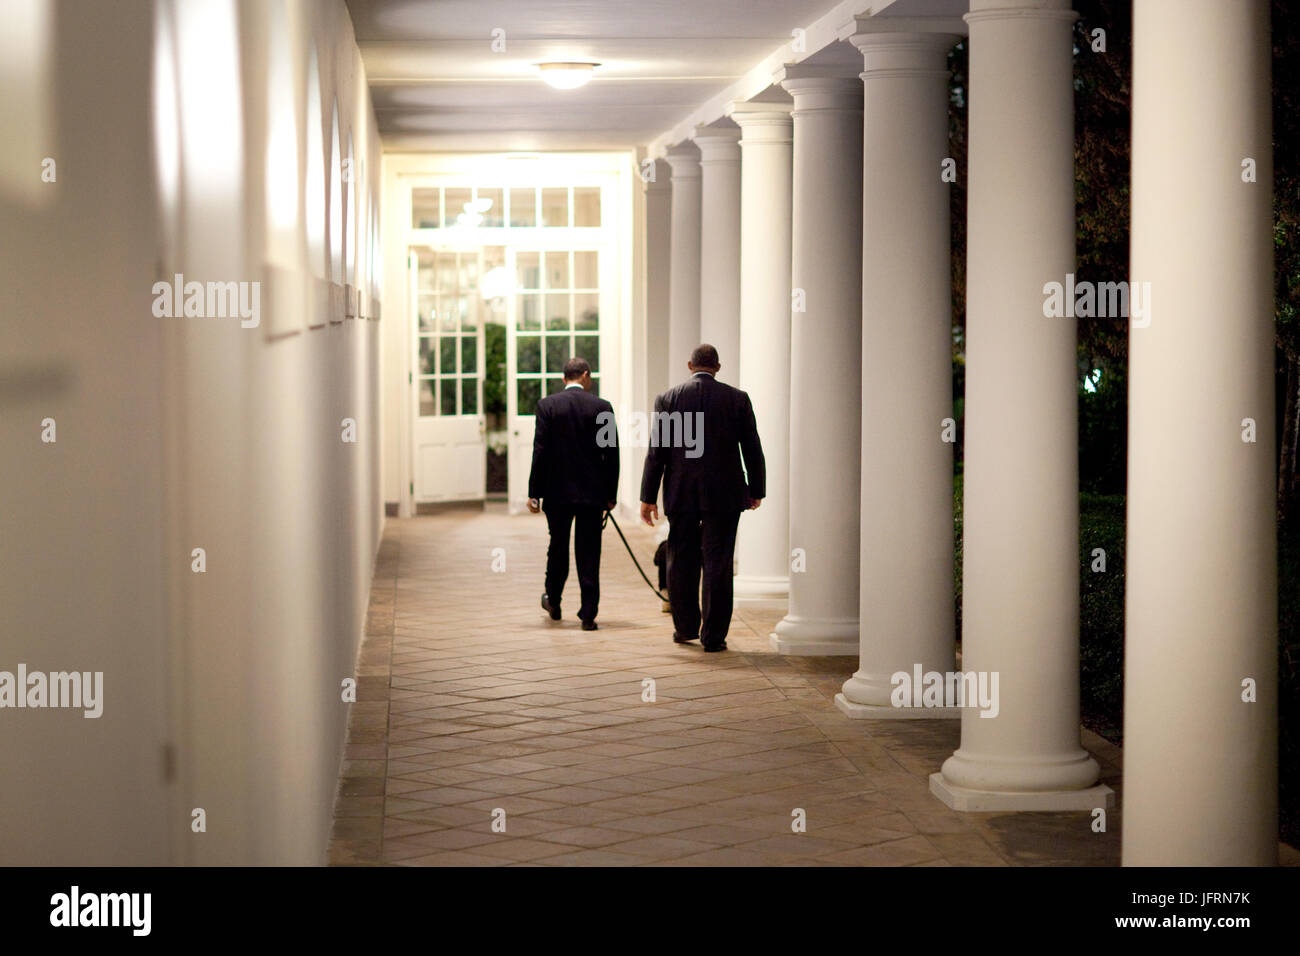 Le président Barack Obama quitte le bureau ovale la nuit, marcher avec leur chien, 'Bo', sur la colonnade vers la résidence 4/24/09 Photo Officiel de la Maison Blanche par Pete Souza Banque D'Images